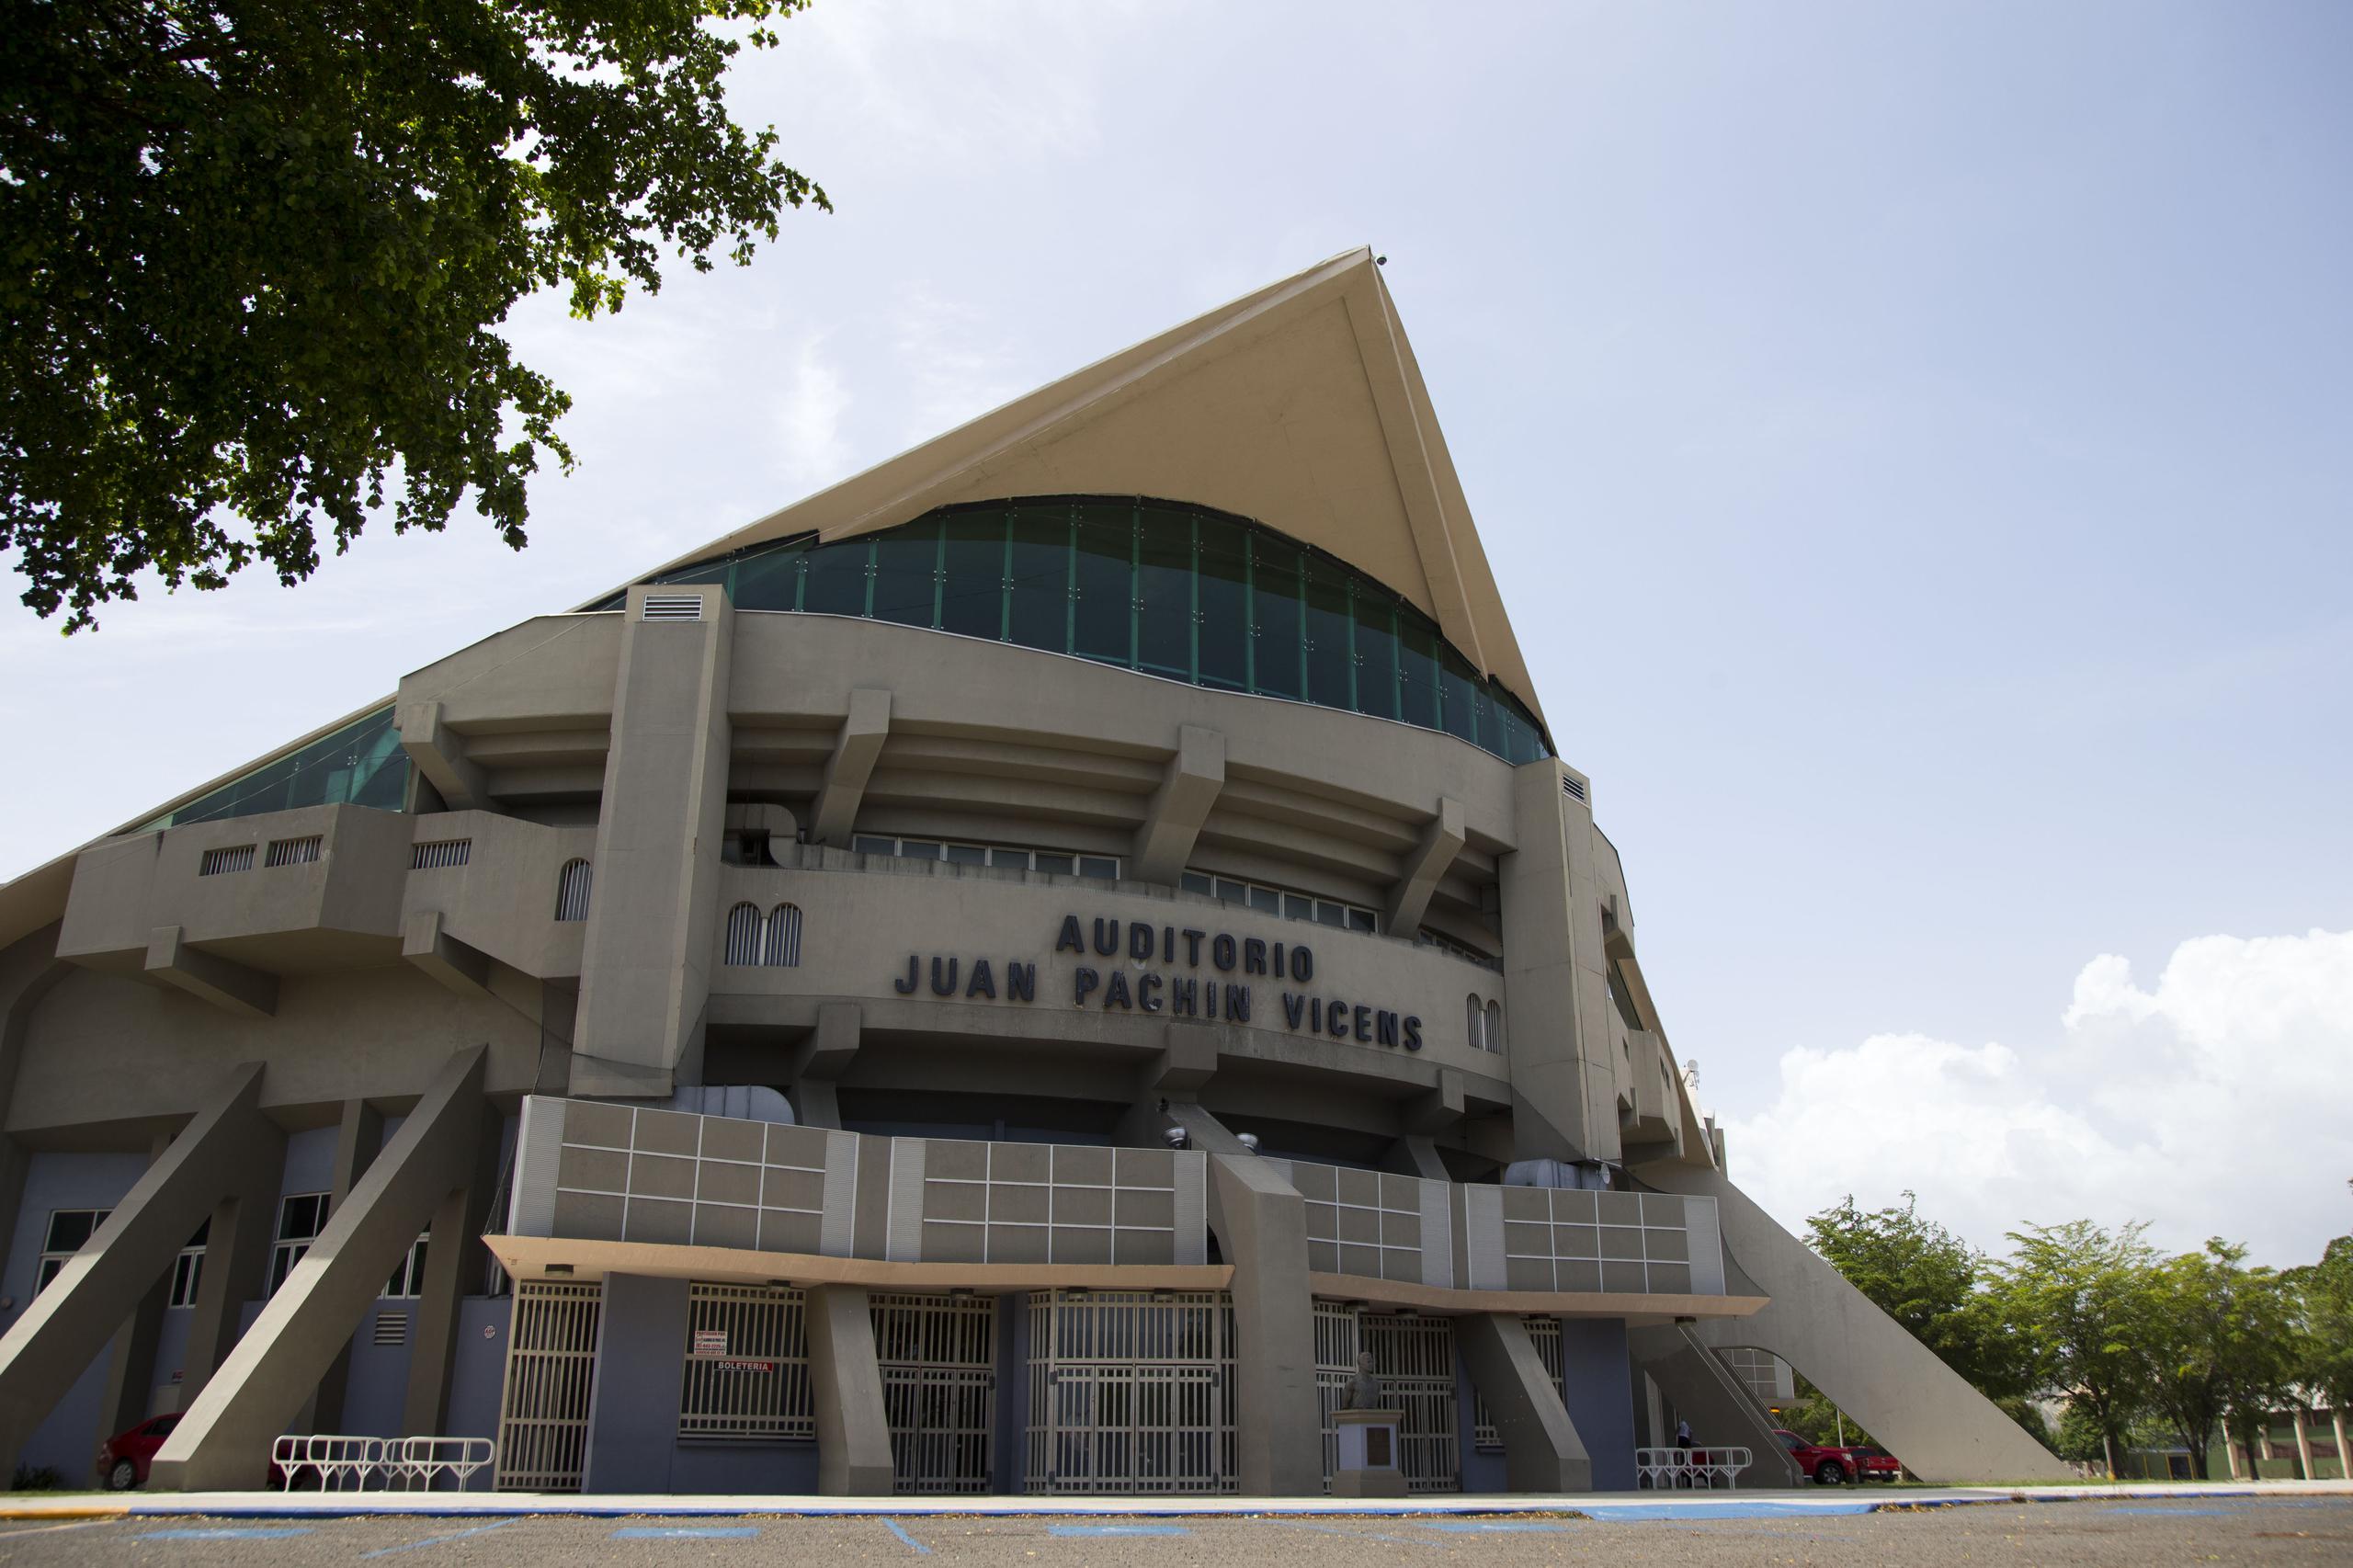 El Auditorio Juan 'Pachín' Vicens de Ponce volverá a ser inspeccionado la semana próxima.